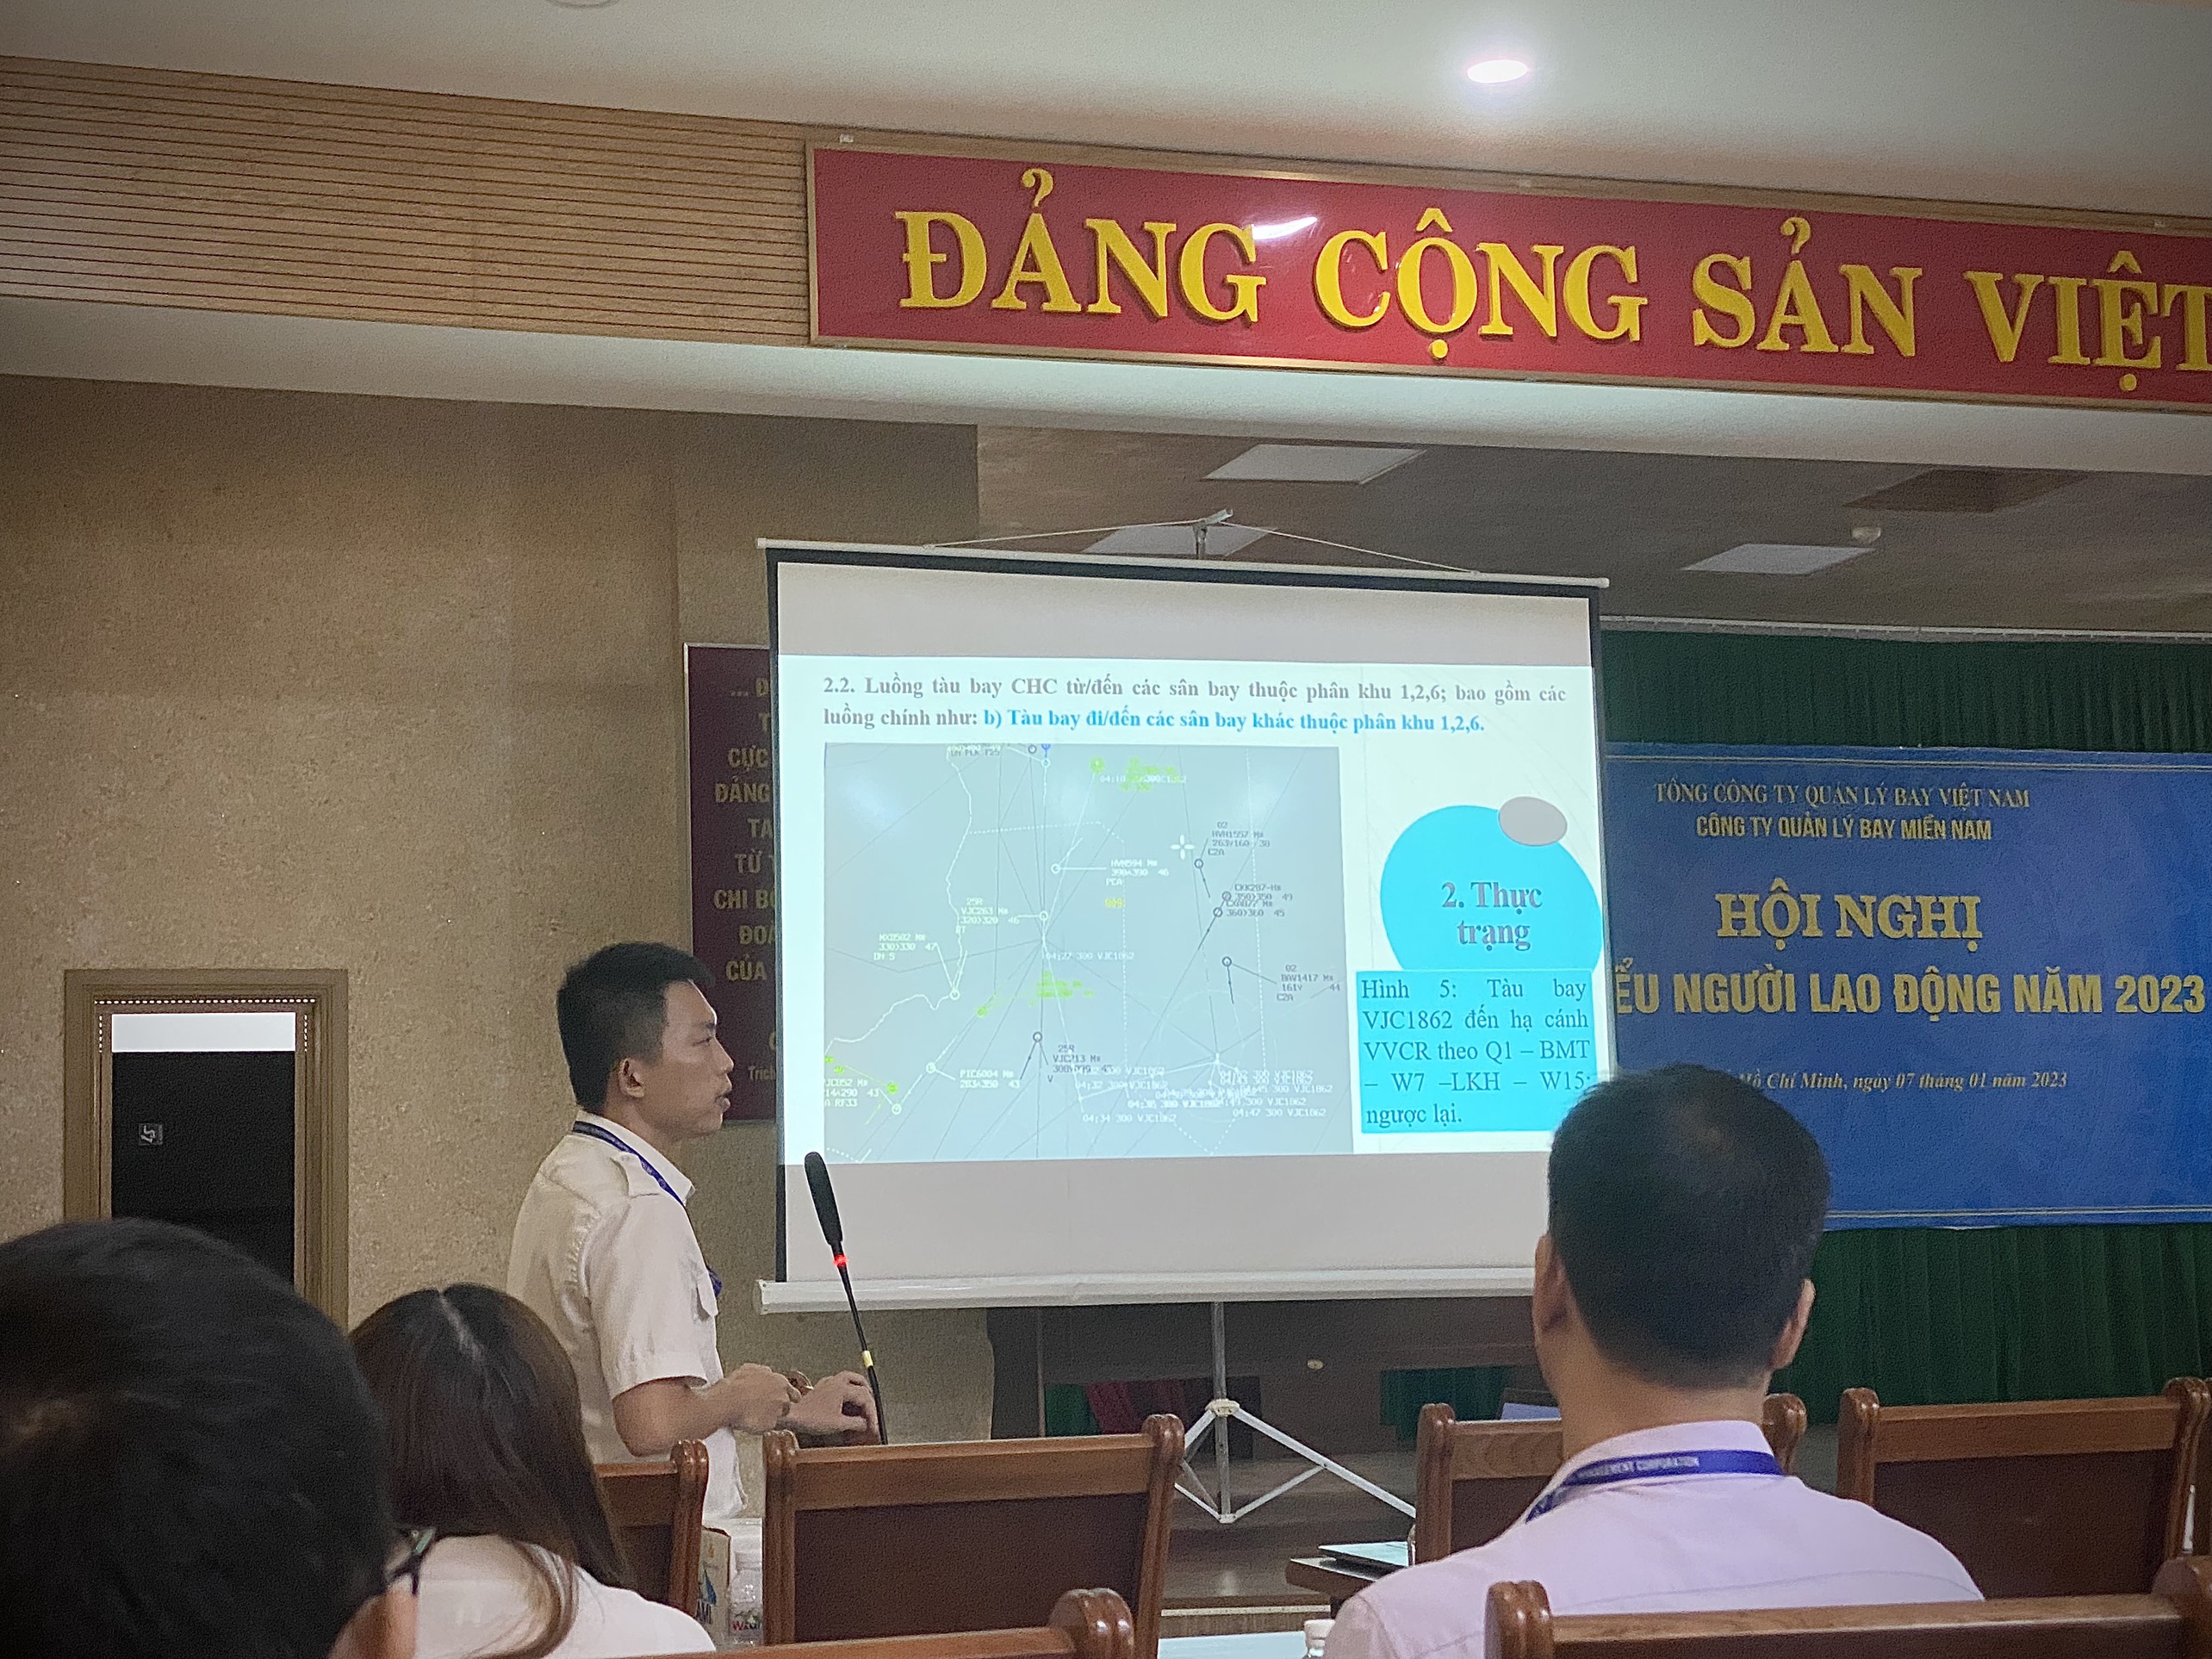 Đoàn cơ sở Quản lý bay miền Nam, Chi đoàn Trung tâm Kiểm soát đường dài Hồ Chí Minh tổ chức hội thảo chuyên môn